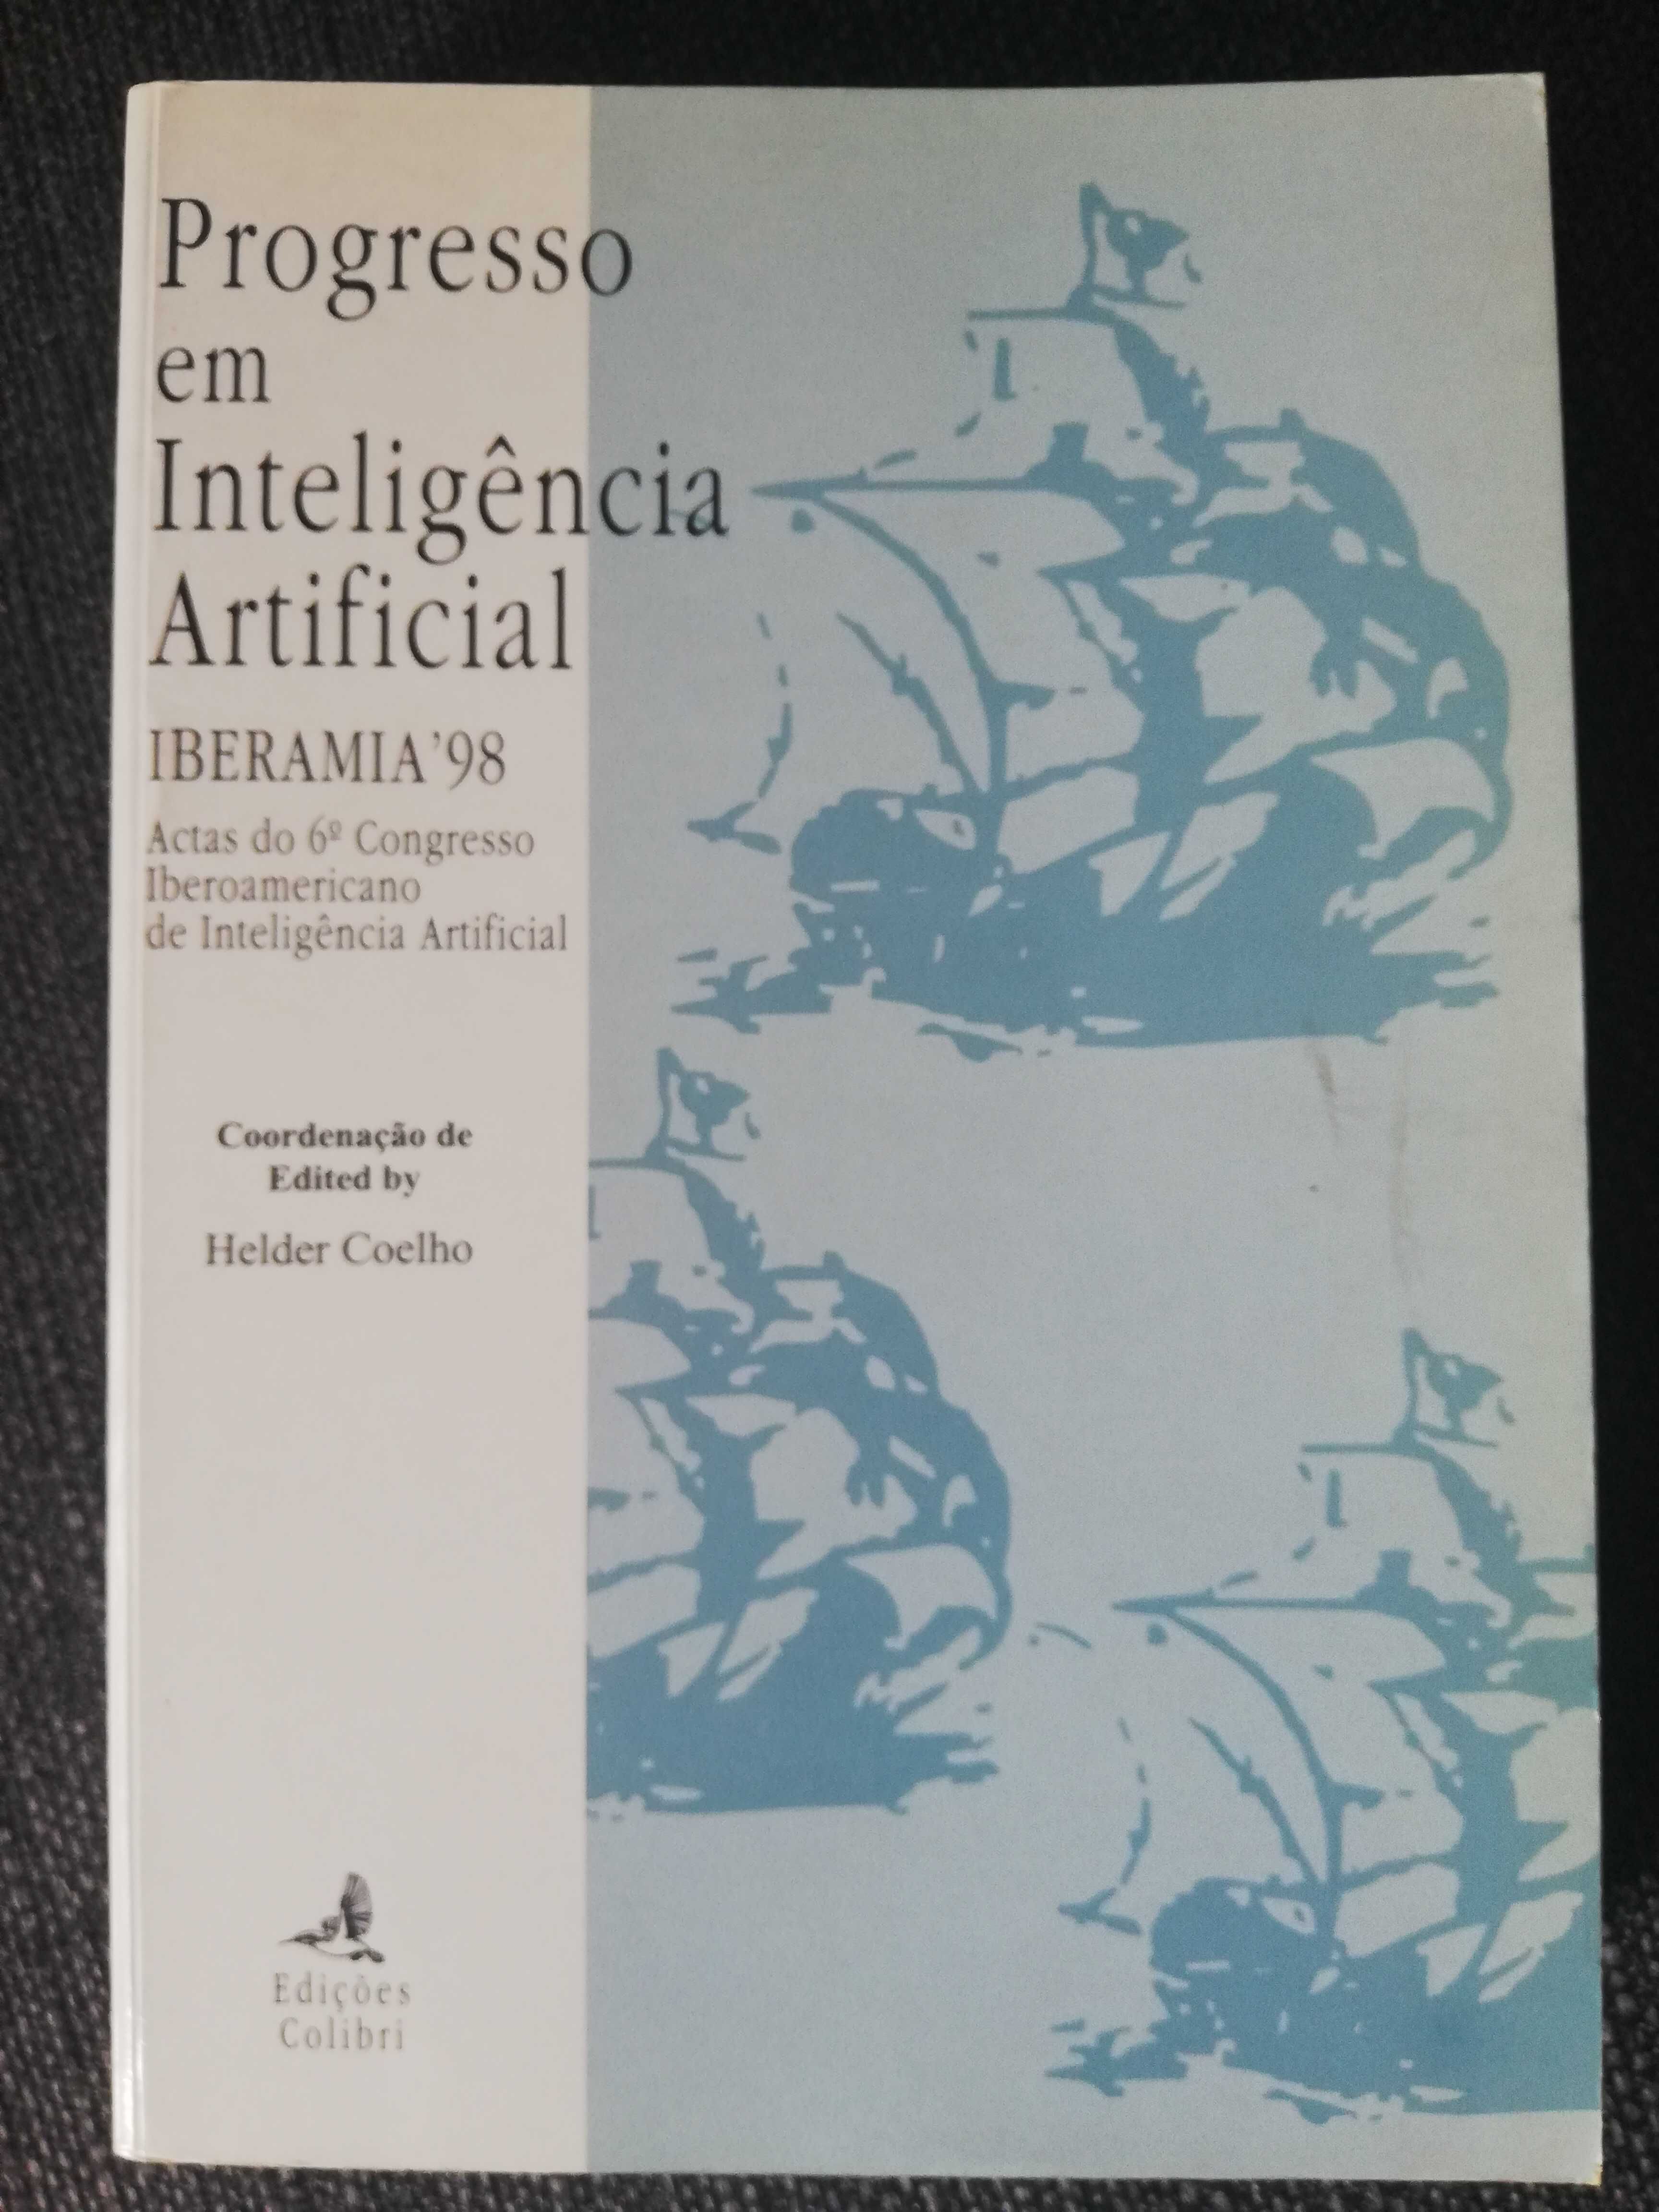 Progresso em Inteligência Artificial - IBERAMIA'98 - Helder Coelho